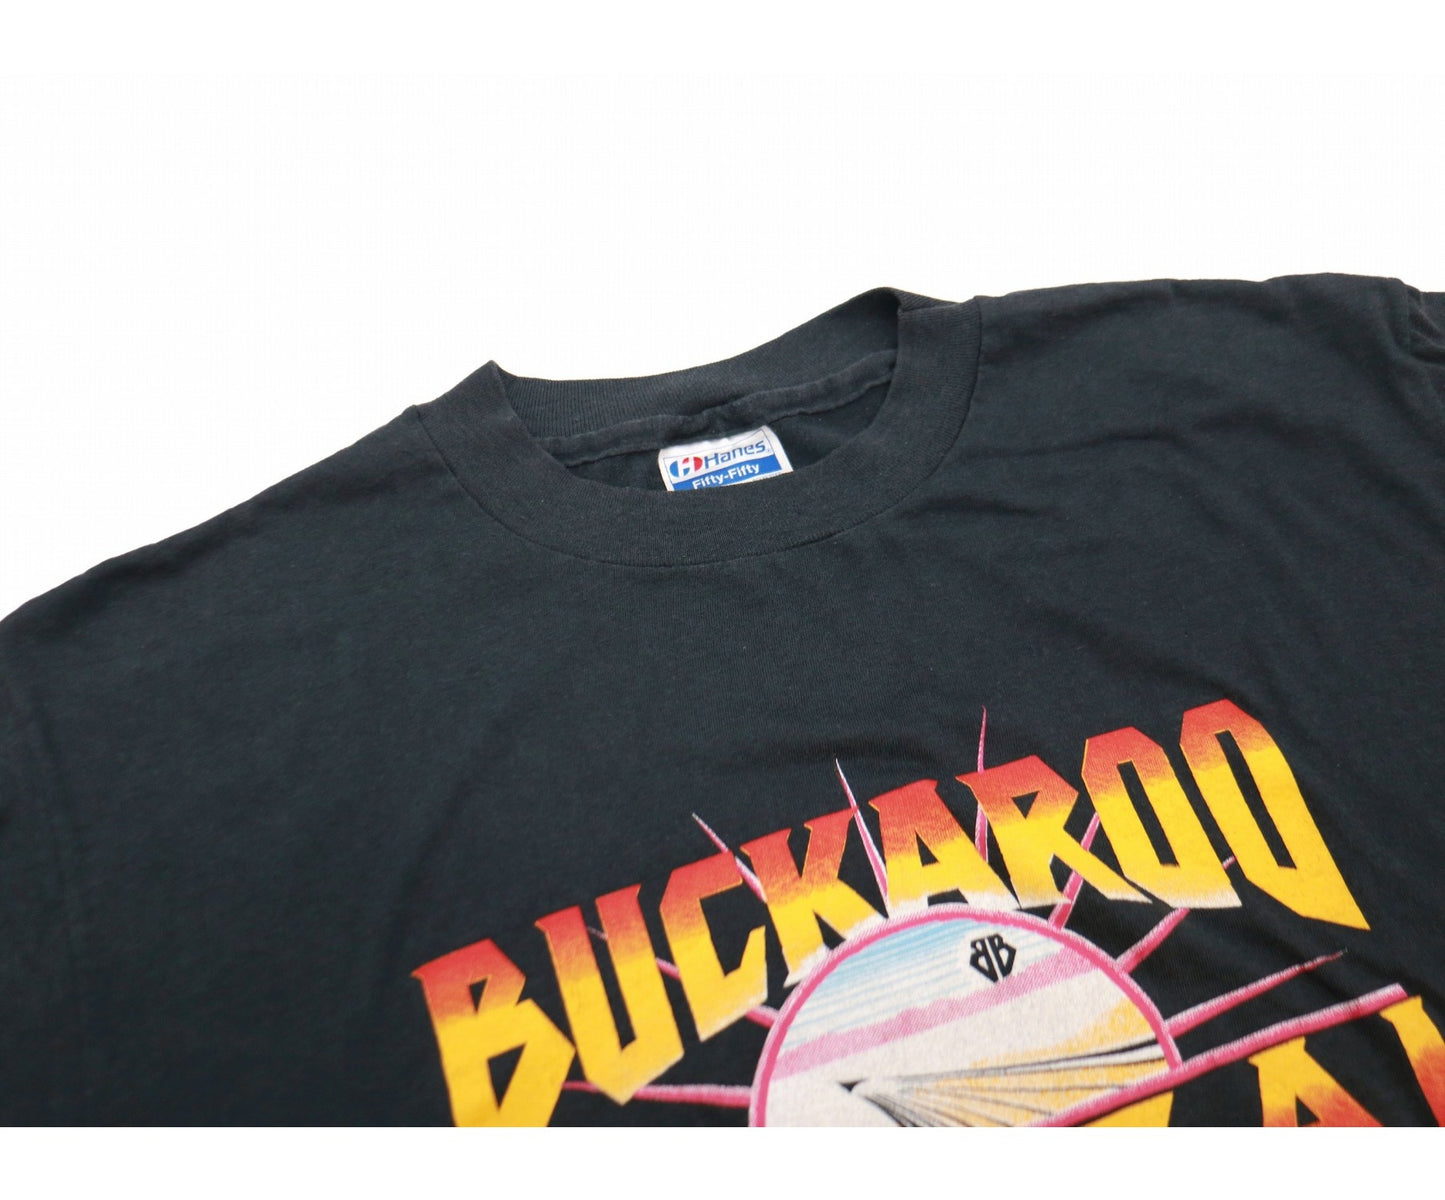 Buckaroo Banzai 80的电影院T恤